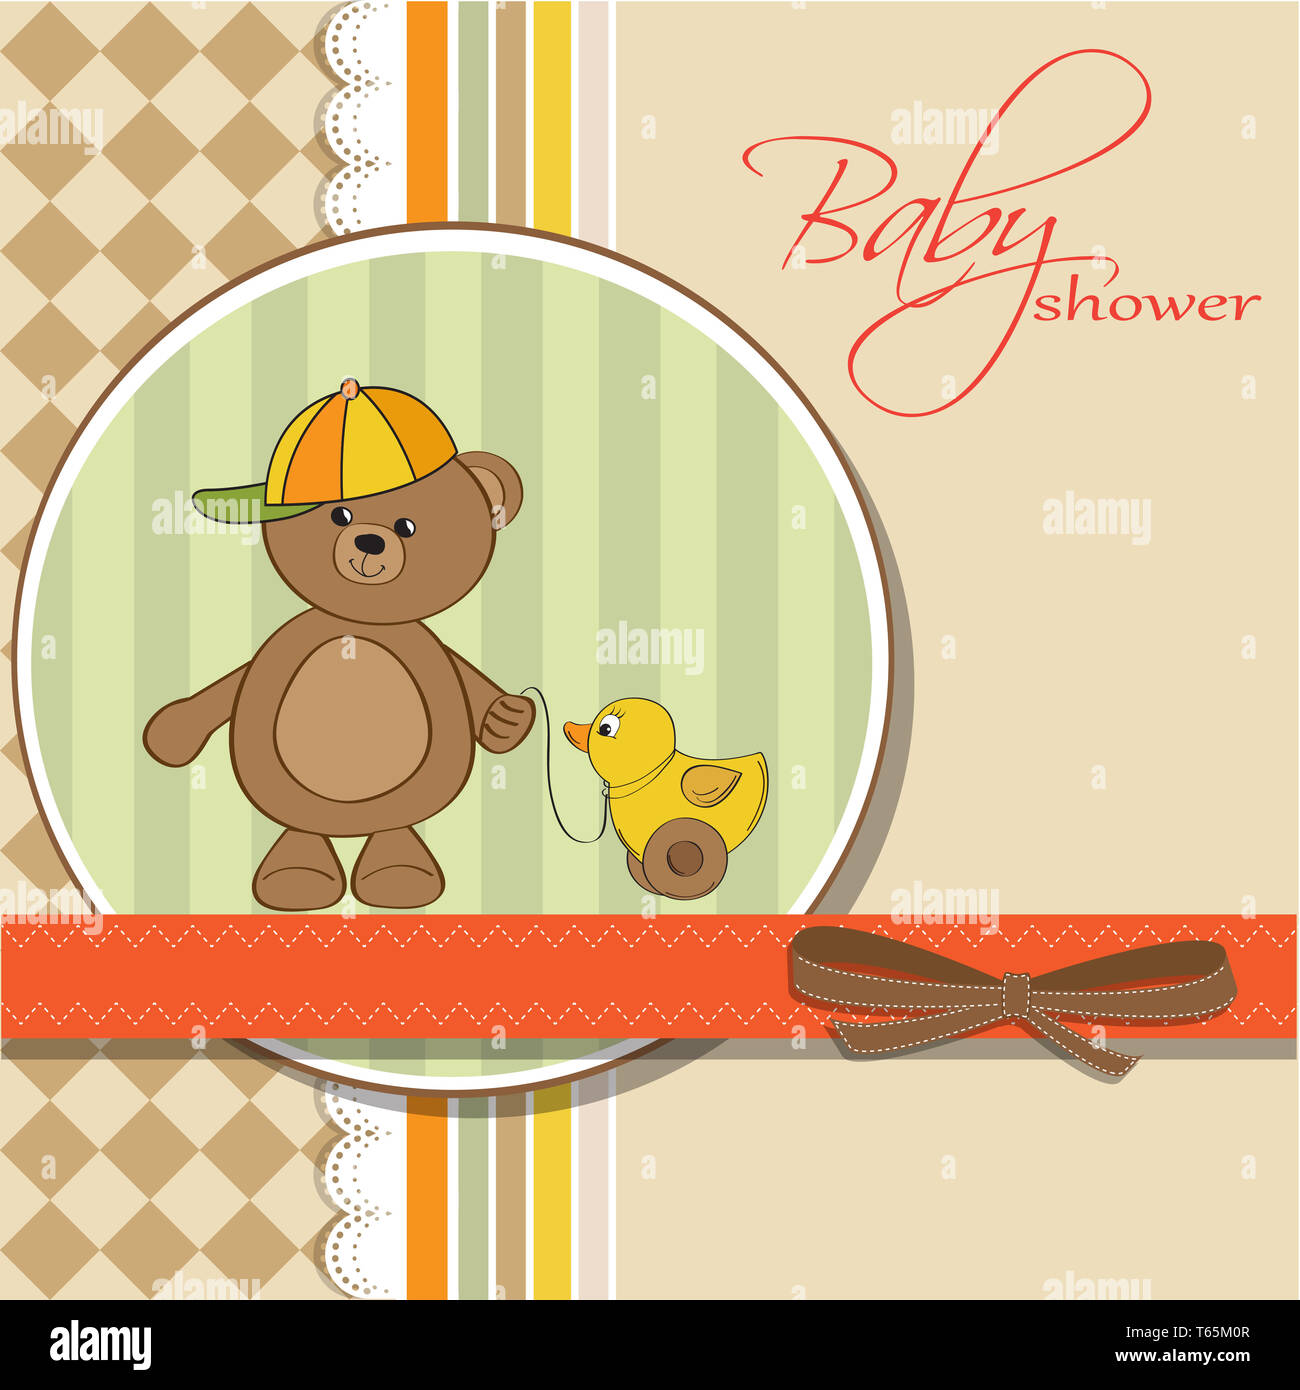 Willkommen Sie Baby-Karte mit jungen Teddybär und seine Ente Stockfoto